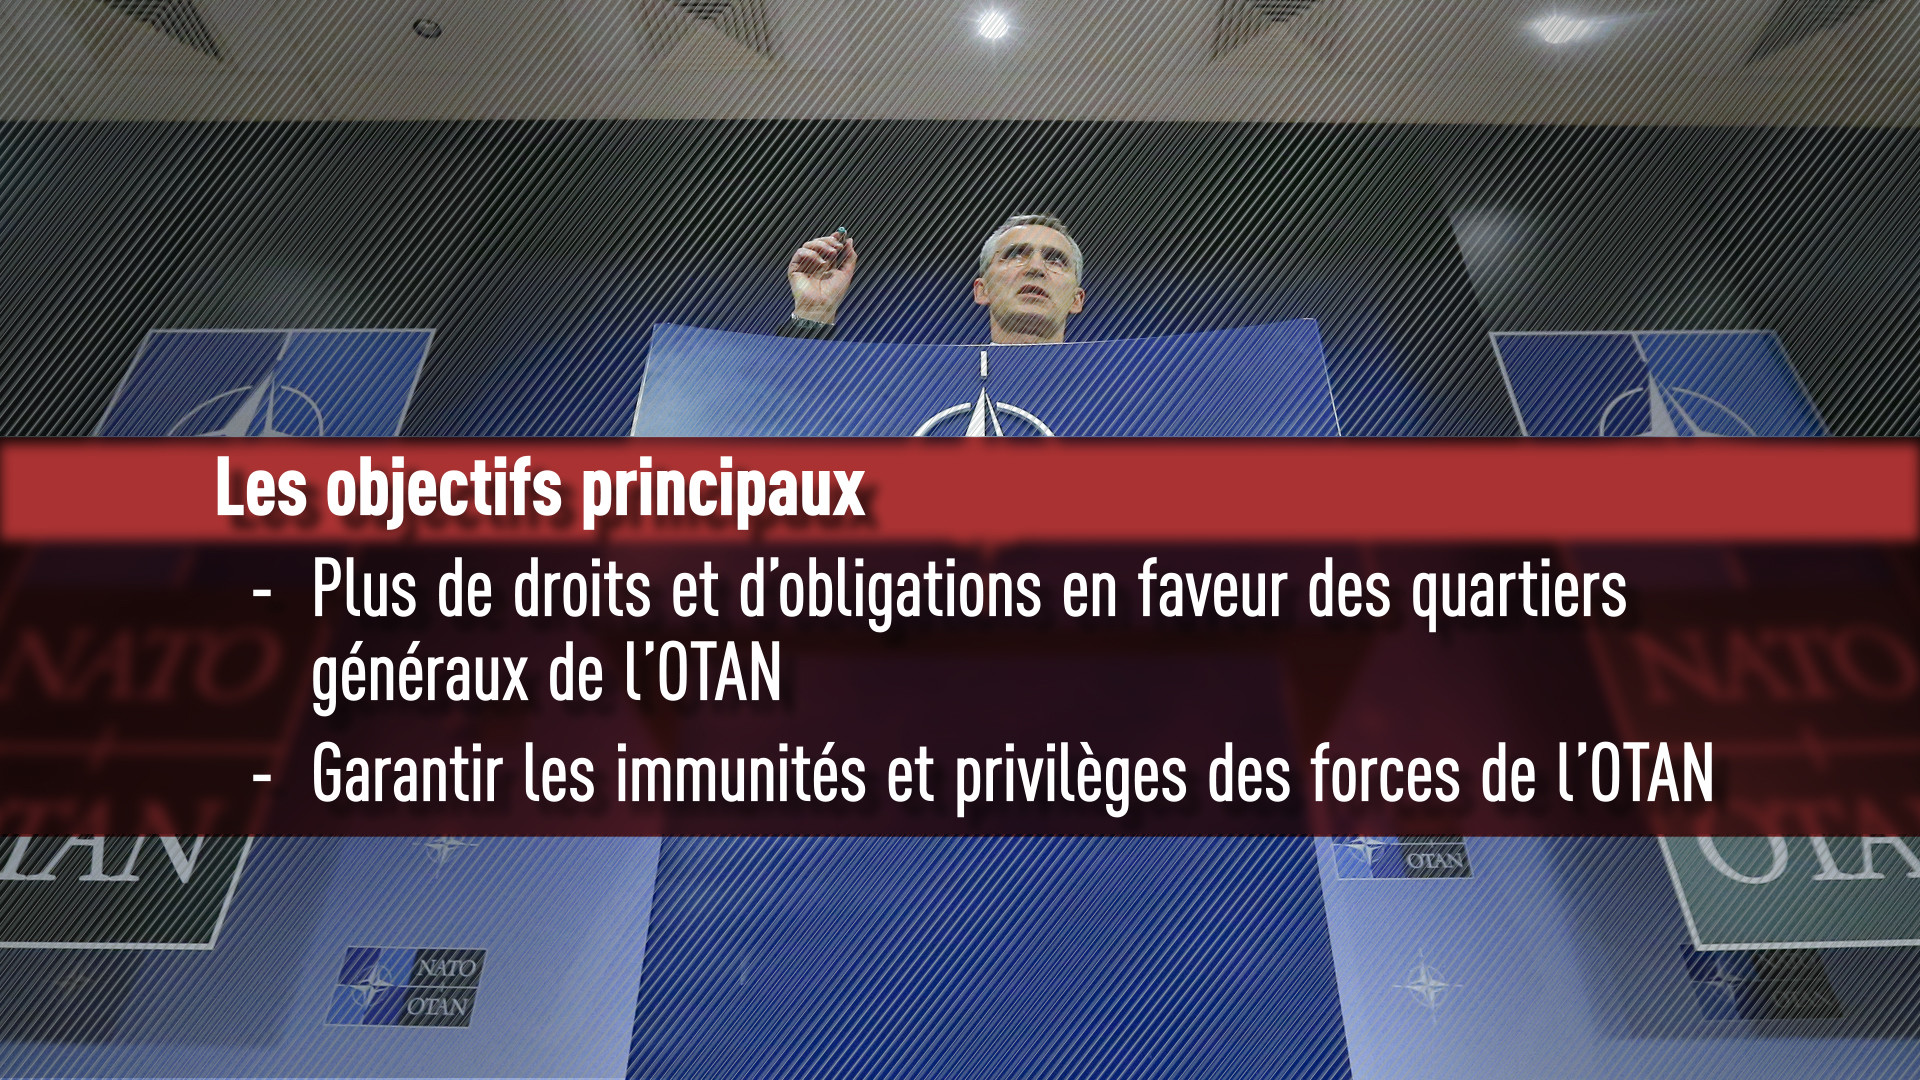 Rétablissement du protocole de Paris de l'OTAN par François Hollande : quels enjeux ?